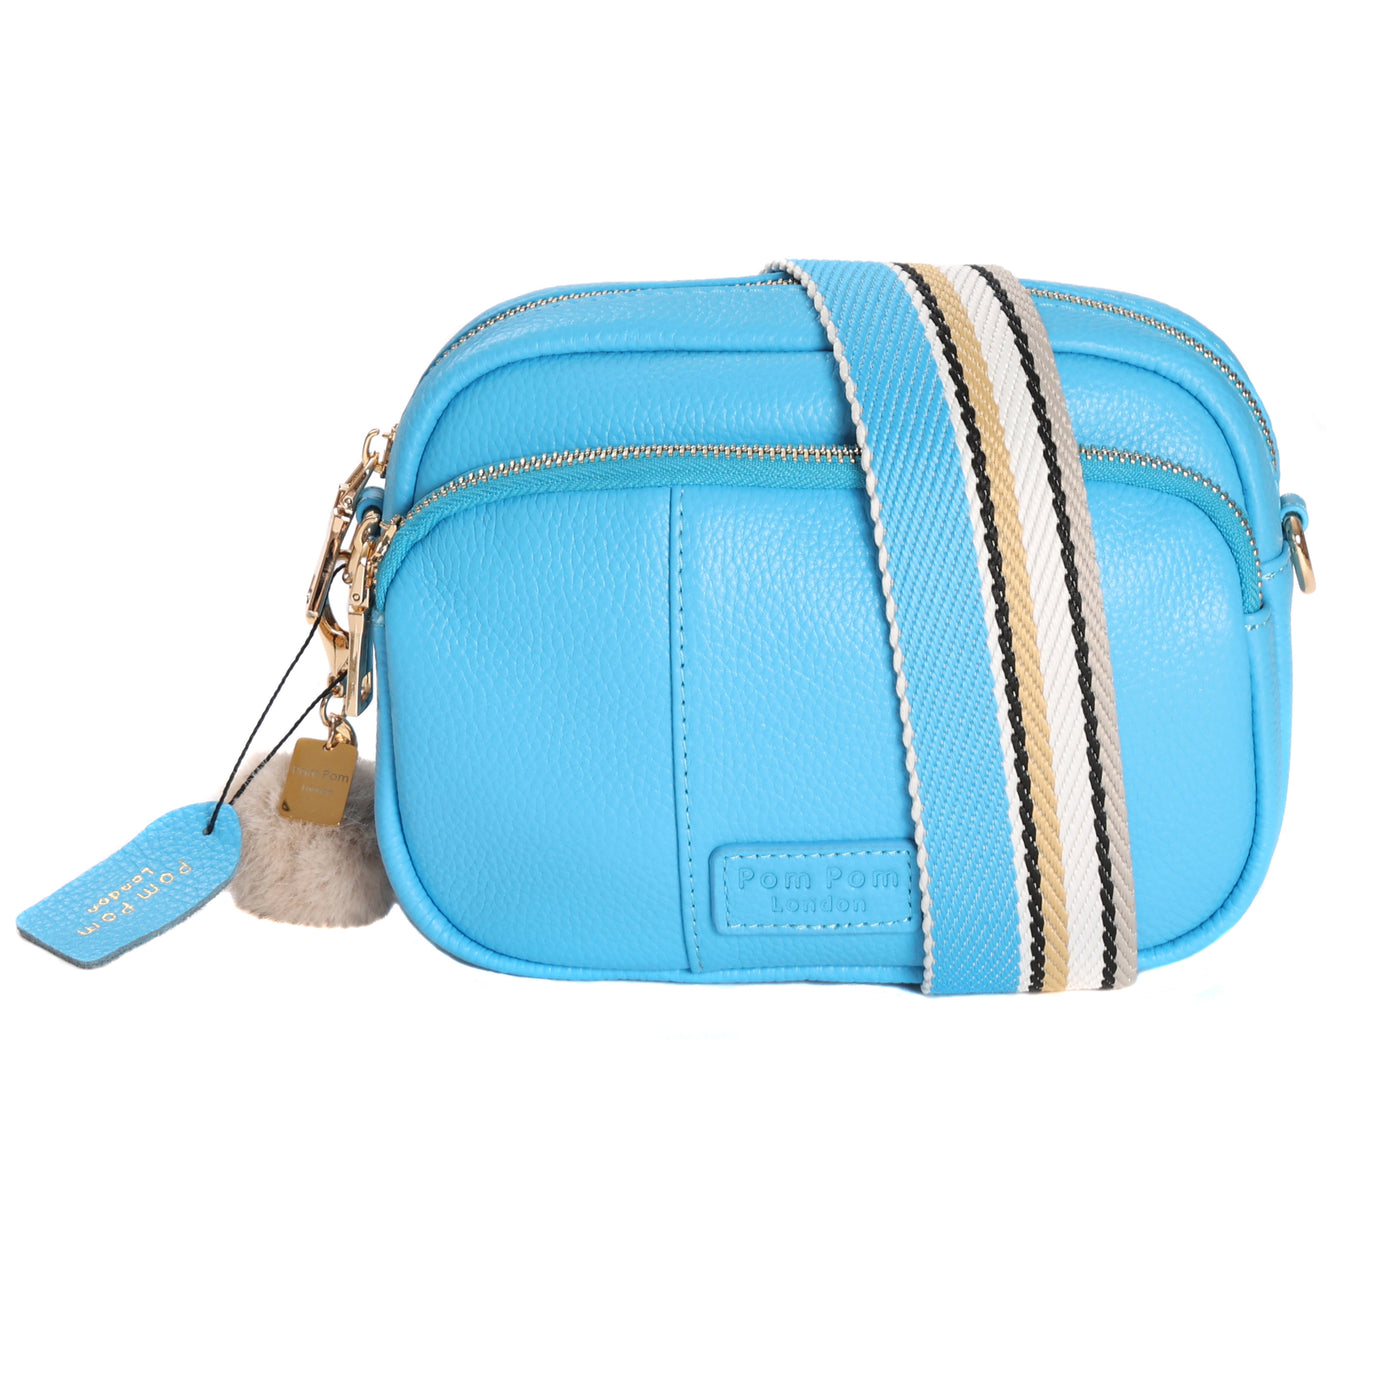 Mayfair Bag Azure Blue & Accessories